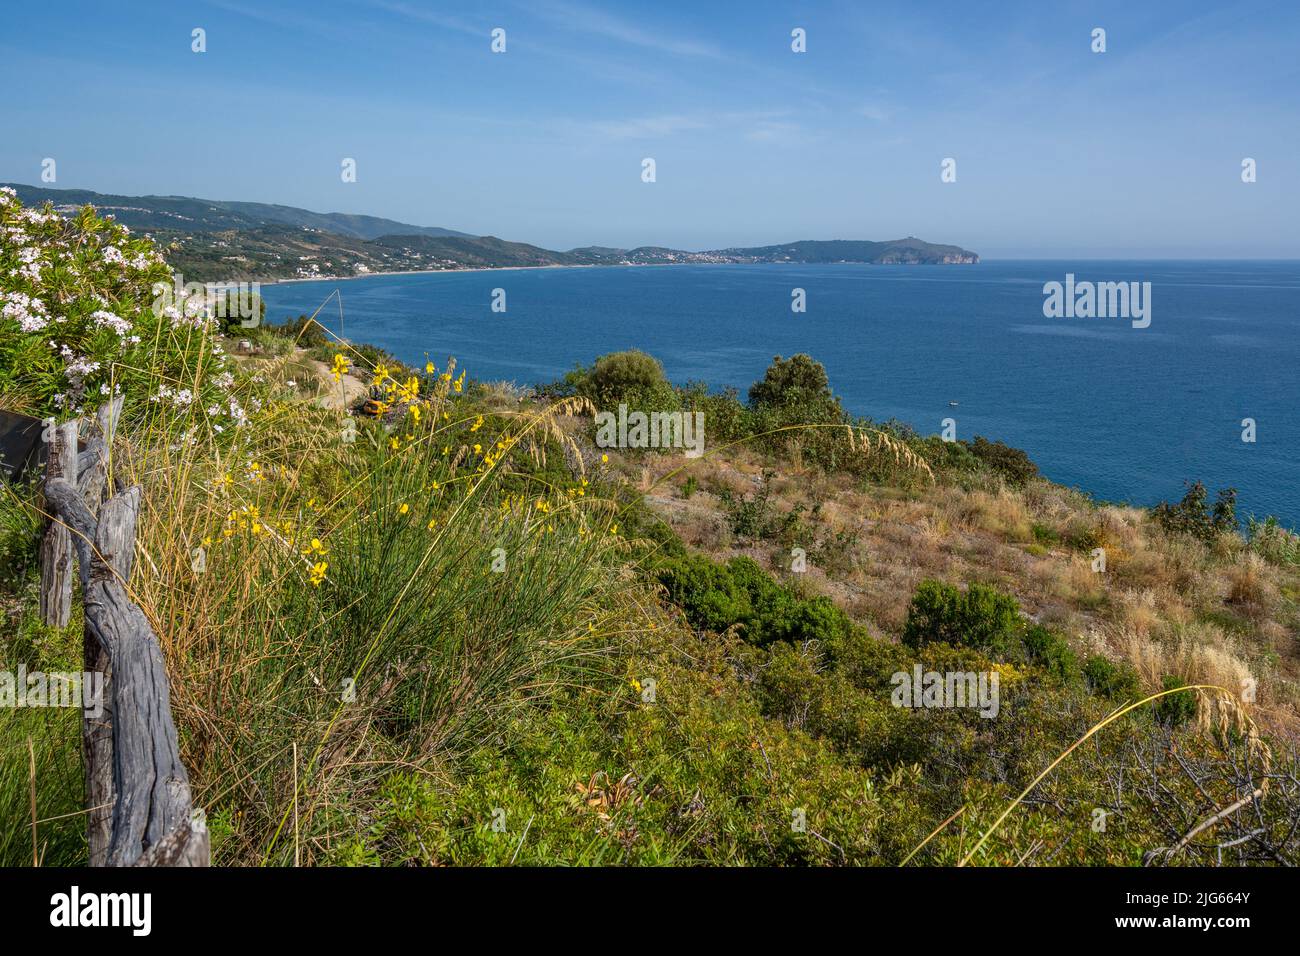 Vue panoramique sur la côte du Cilento avec de belles plages et mer claire, région de Campanie, Italie Banque D'Images